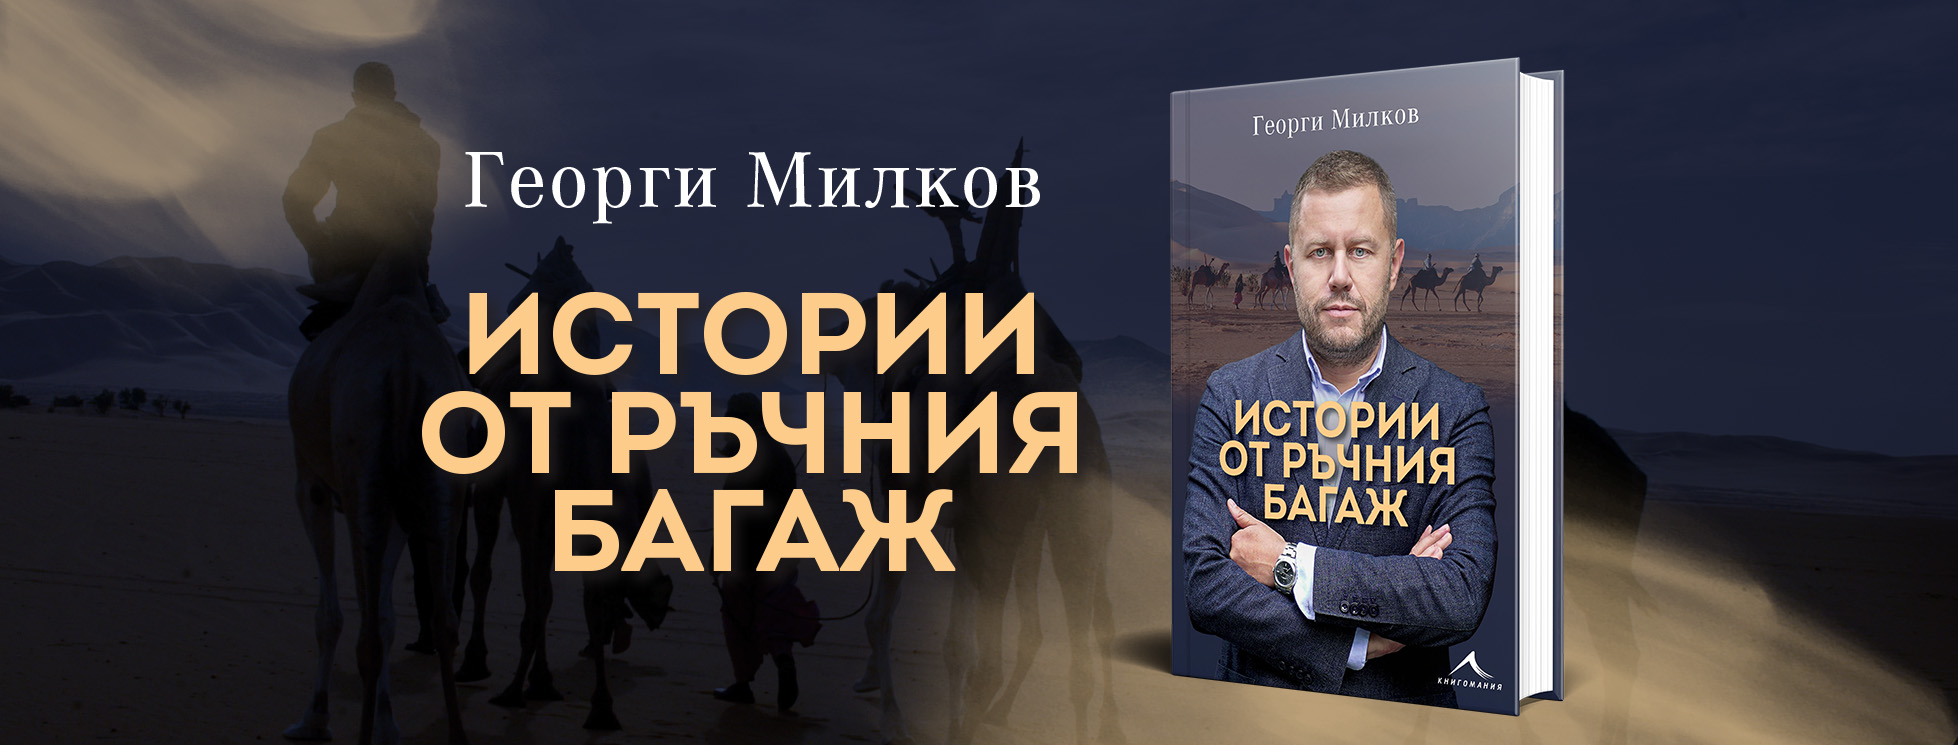 Представяне на книгата „Истории от ръчния багаж“ и Георги Милков